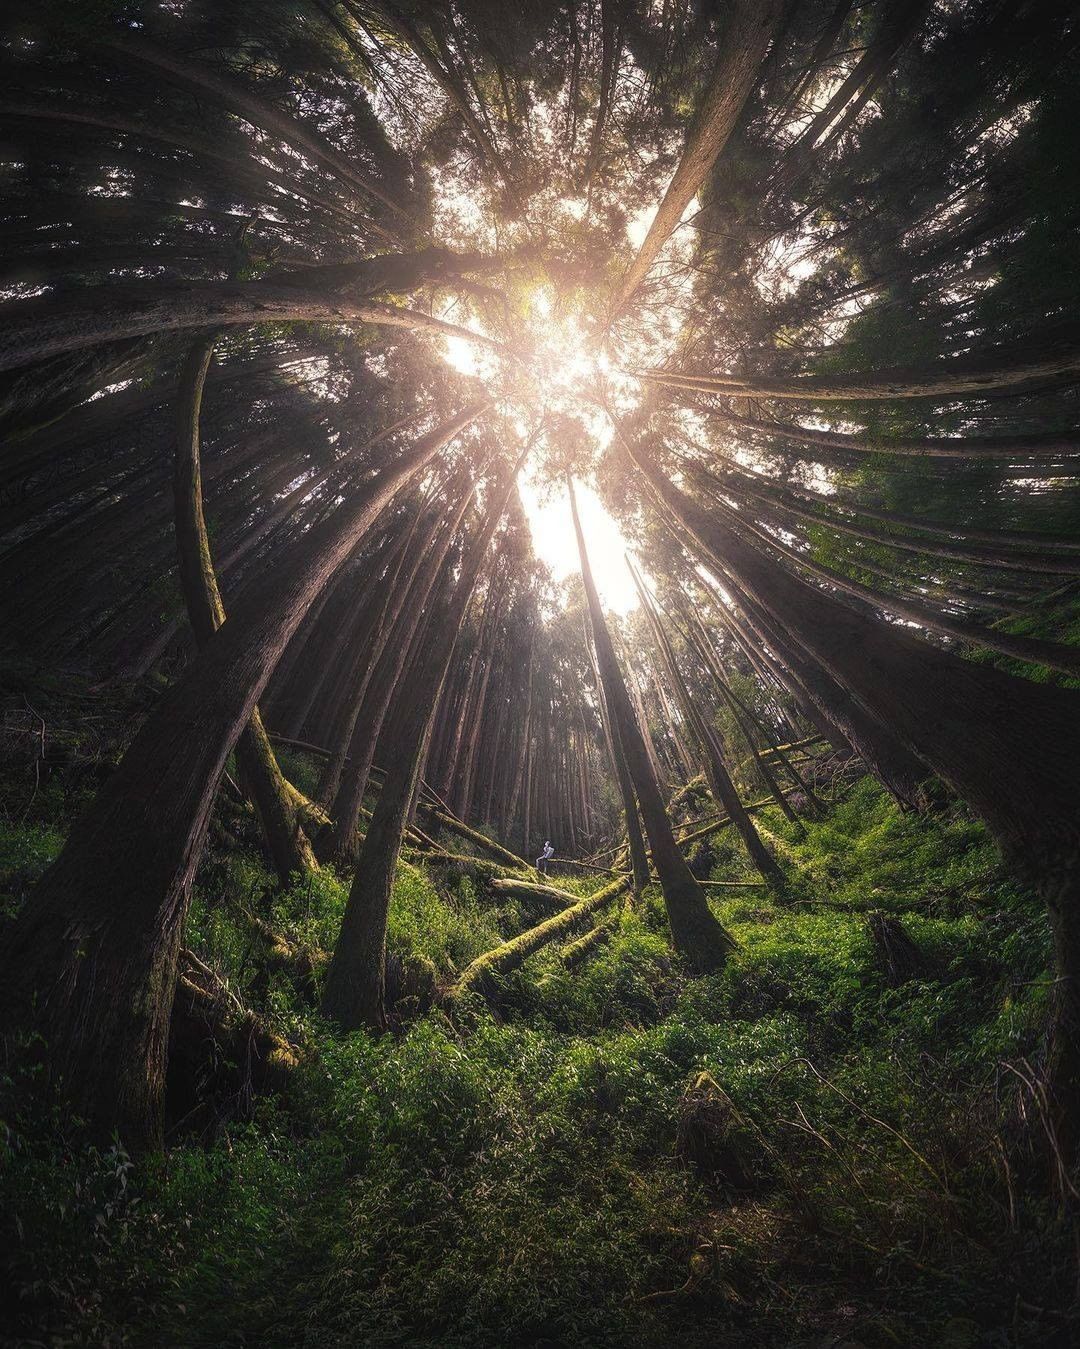 漫遊在阿里山森林中隨意抬起頭，就可以看見超夢幻美景呢！-⠀⠀⠀⠀⠀⠀⠀⠀⠀⠀⠀感謝 @rex_photographer  分享的美...